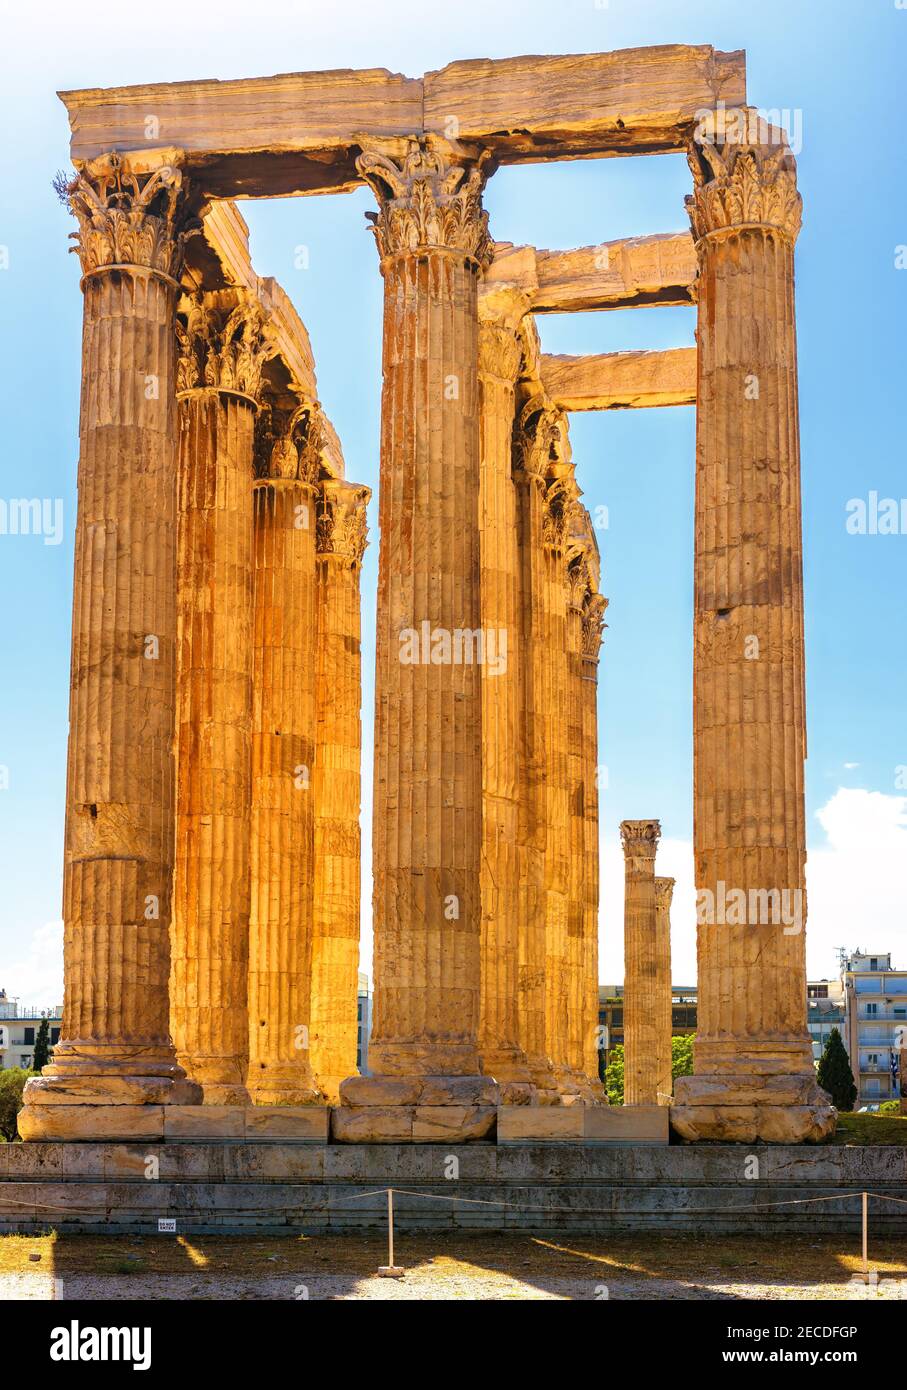 Zeus Tempel in Athen, Griechenland. Es ist berühmtes Denkmal und Wahrzeichen von Athen. Vertikale Ansicht der antiken griechischen Ruinen, große Säulen des klassischen Gebäudes Stockfoto